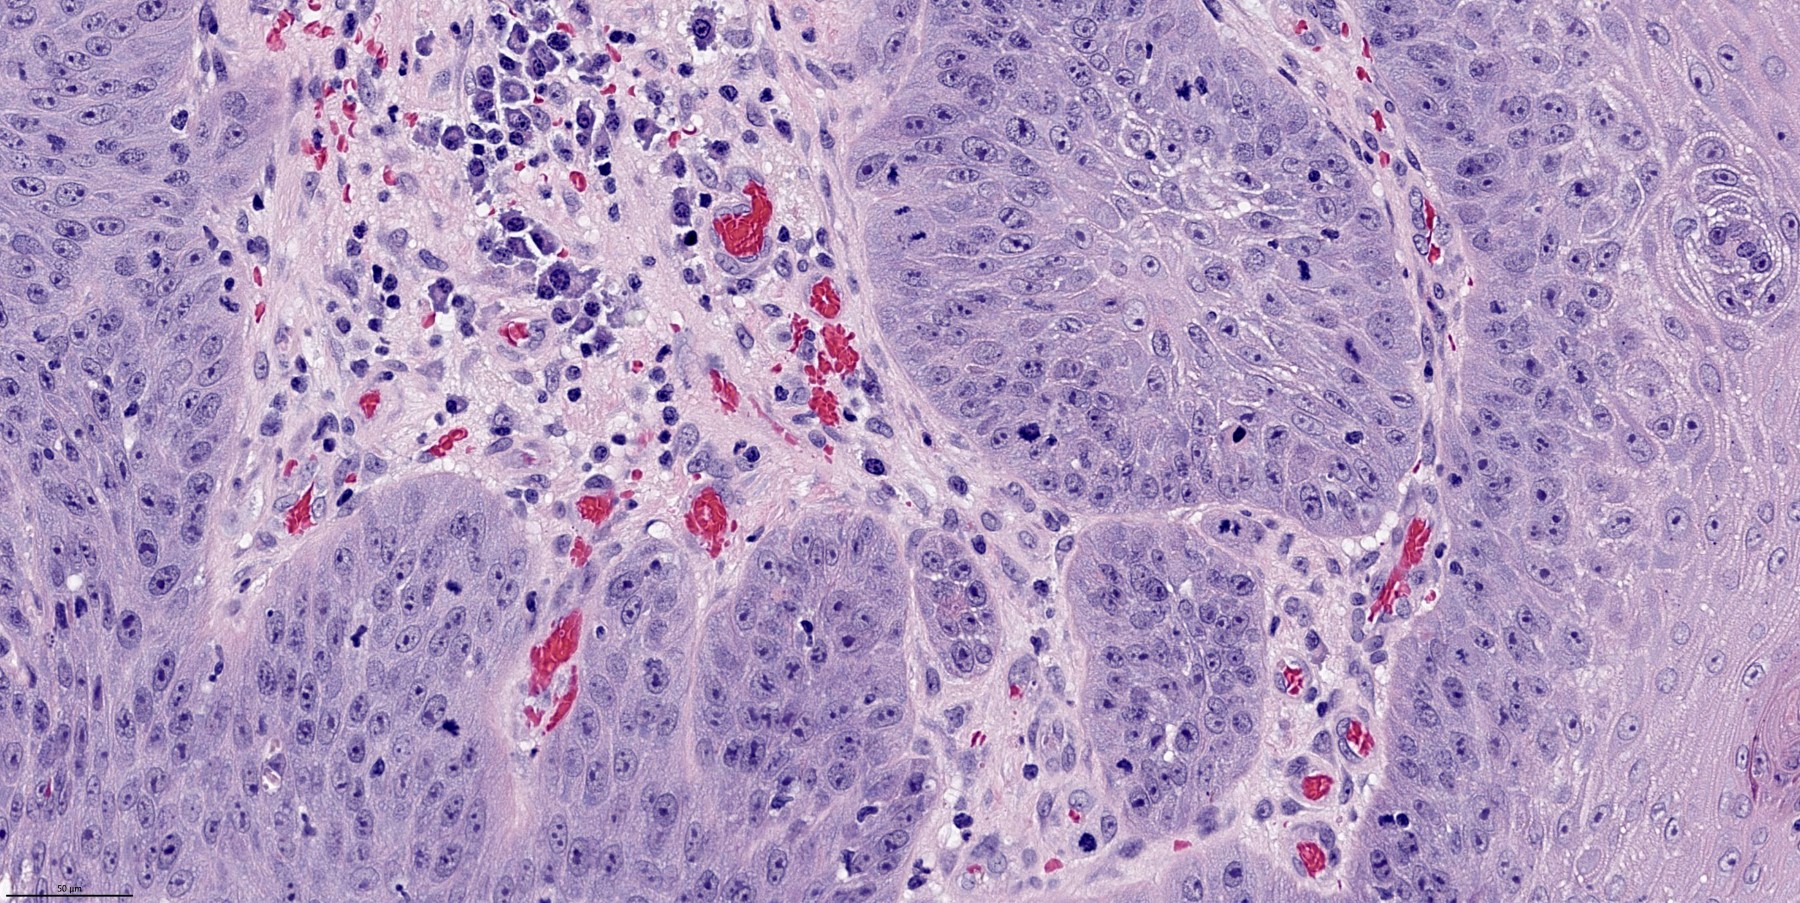 Pathology Outlines Papilloma